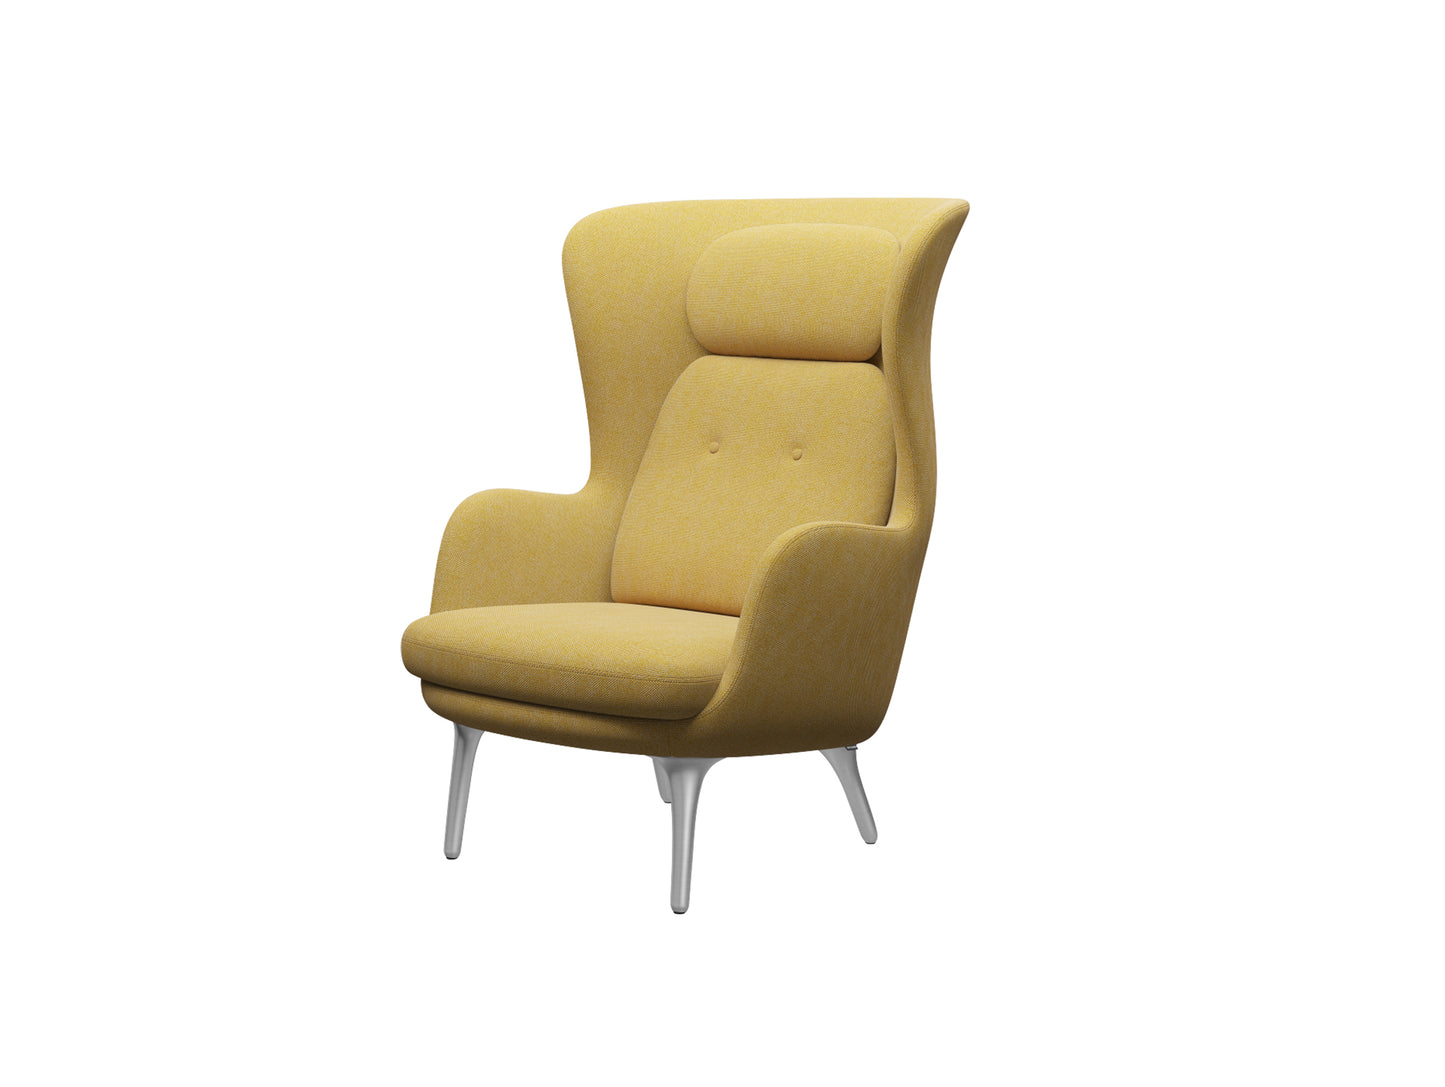 Ro 라운지 의자 - 싱글 커버